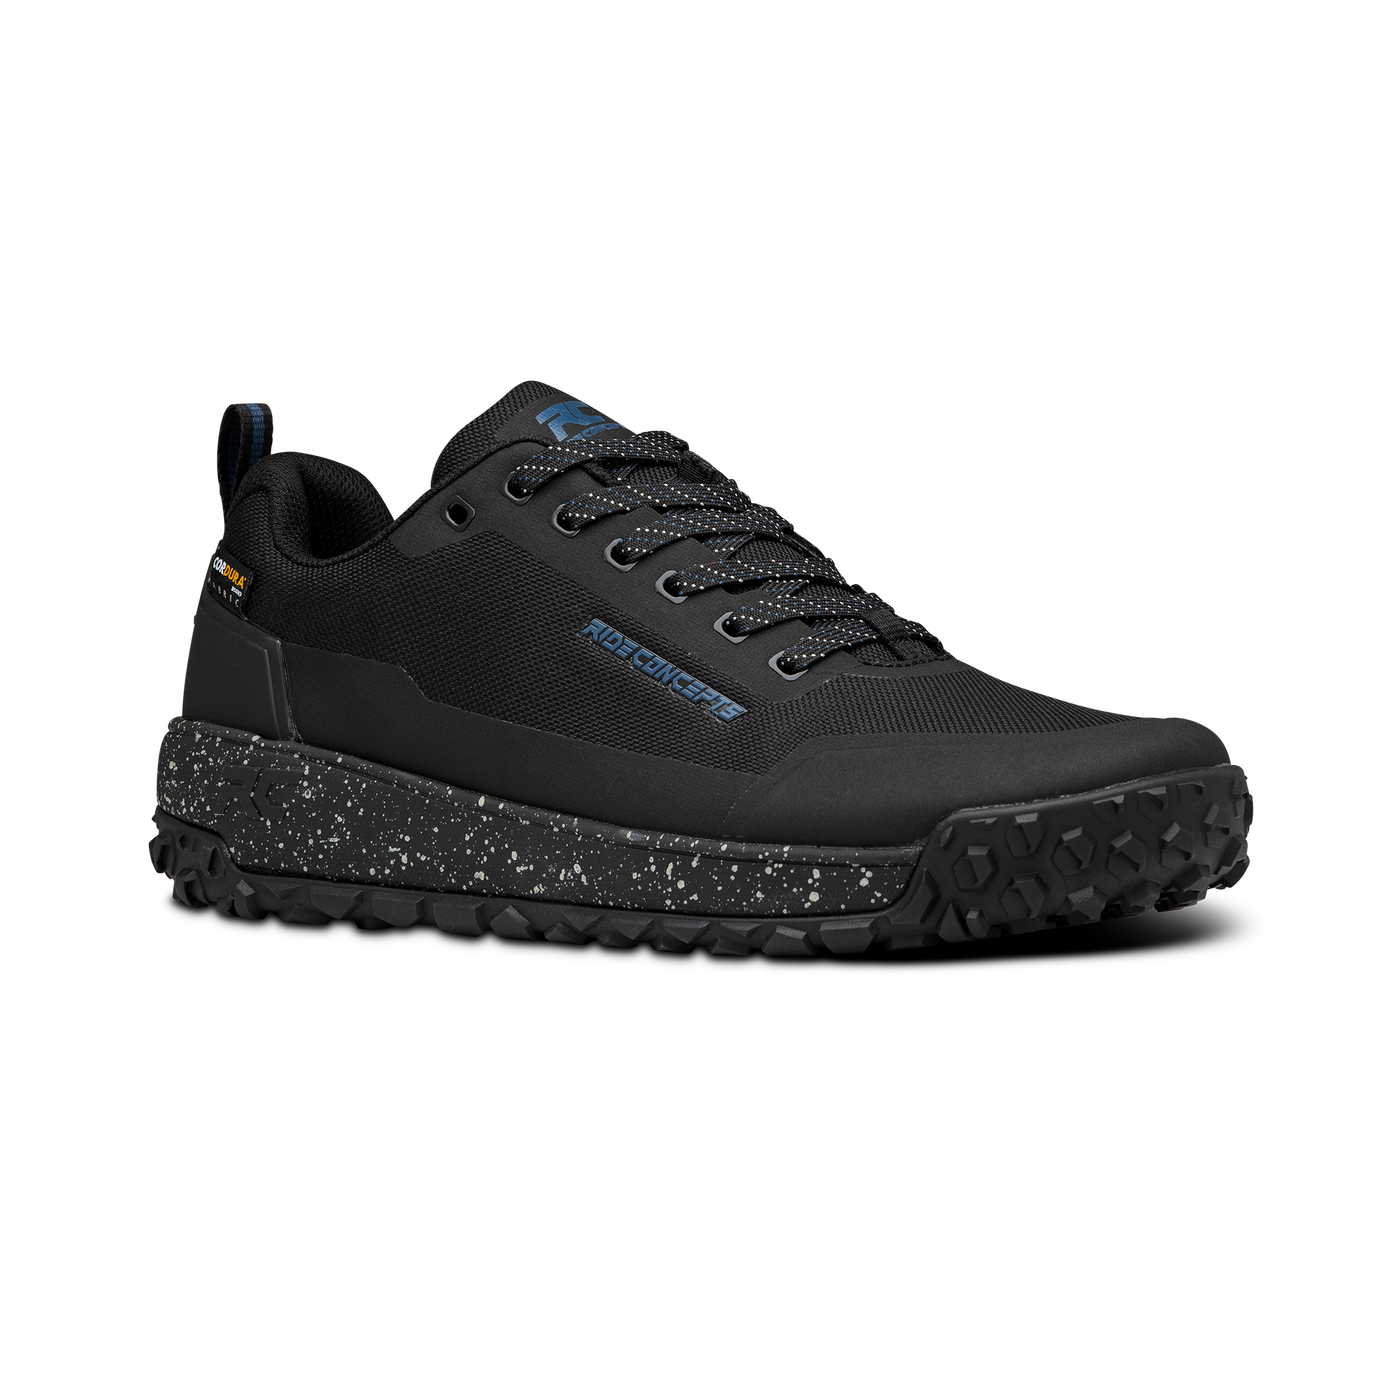 Ride Concepts Men's Tallac MTB Shoe - Black Charcoal 